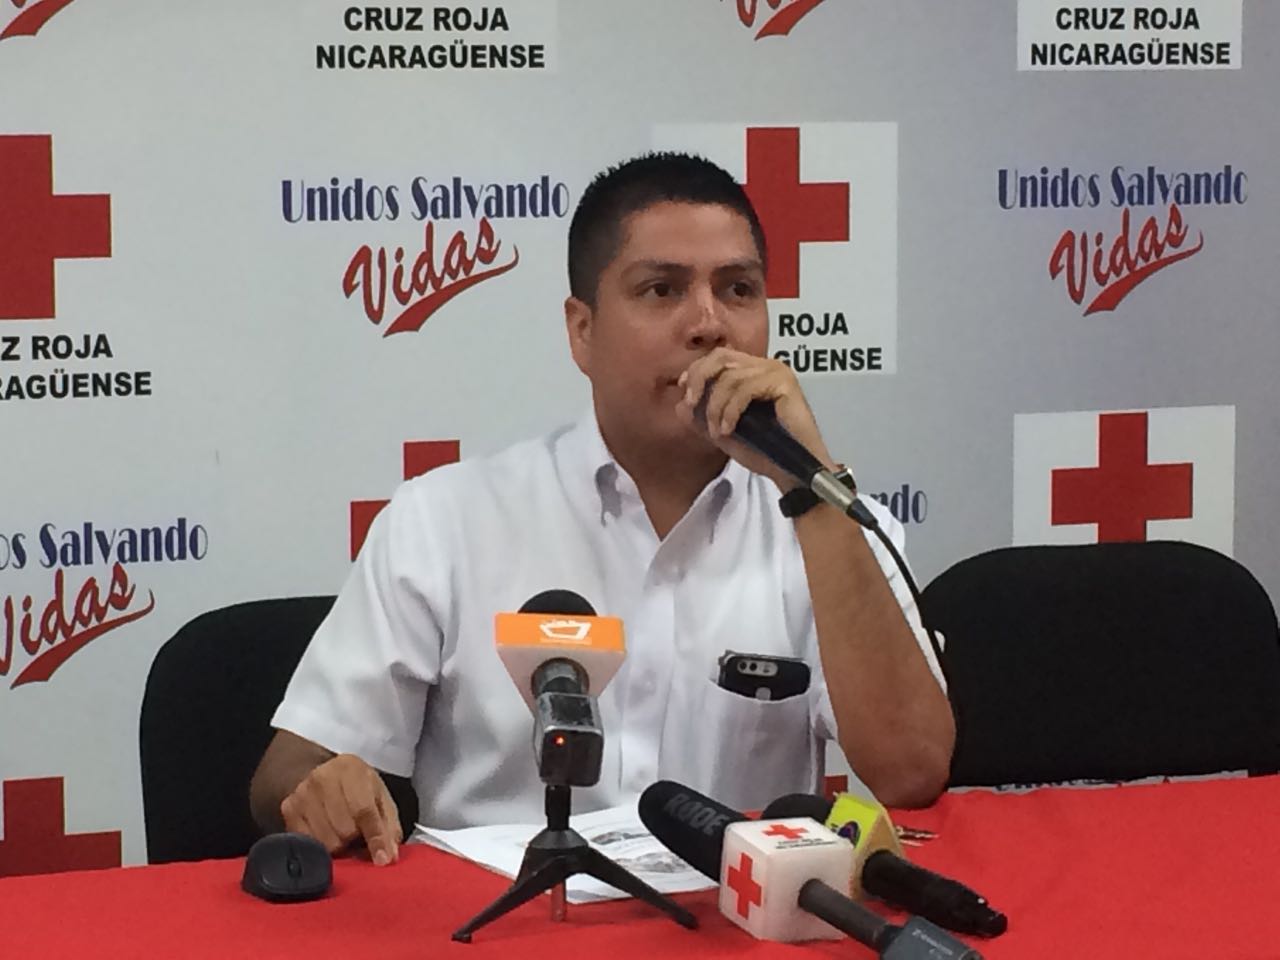 Auner García, director general de Cruz Roja Nicaragüense. Foto: Walkiria Chavarría